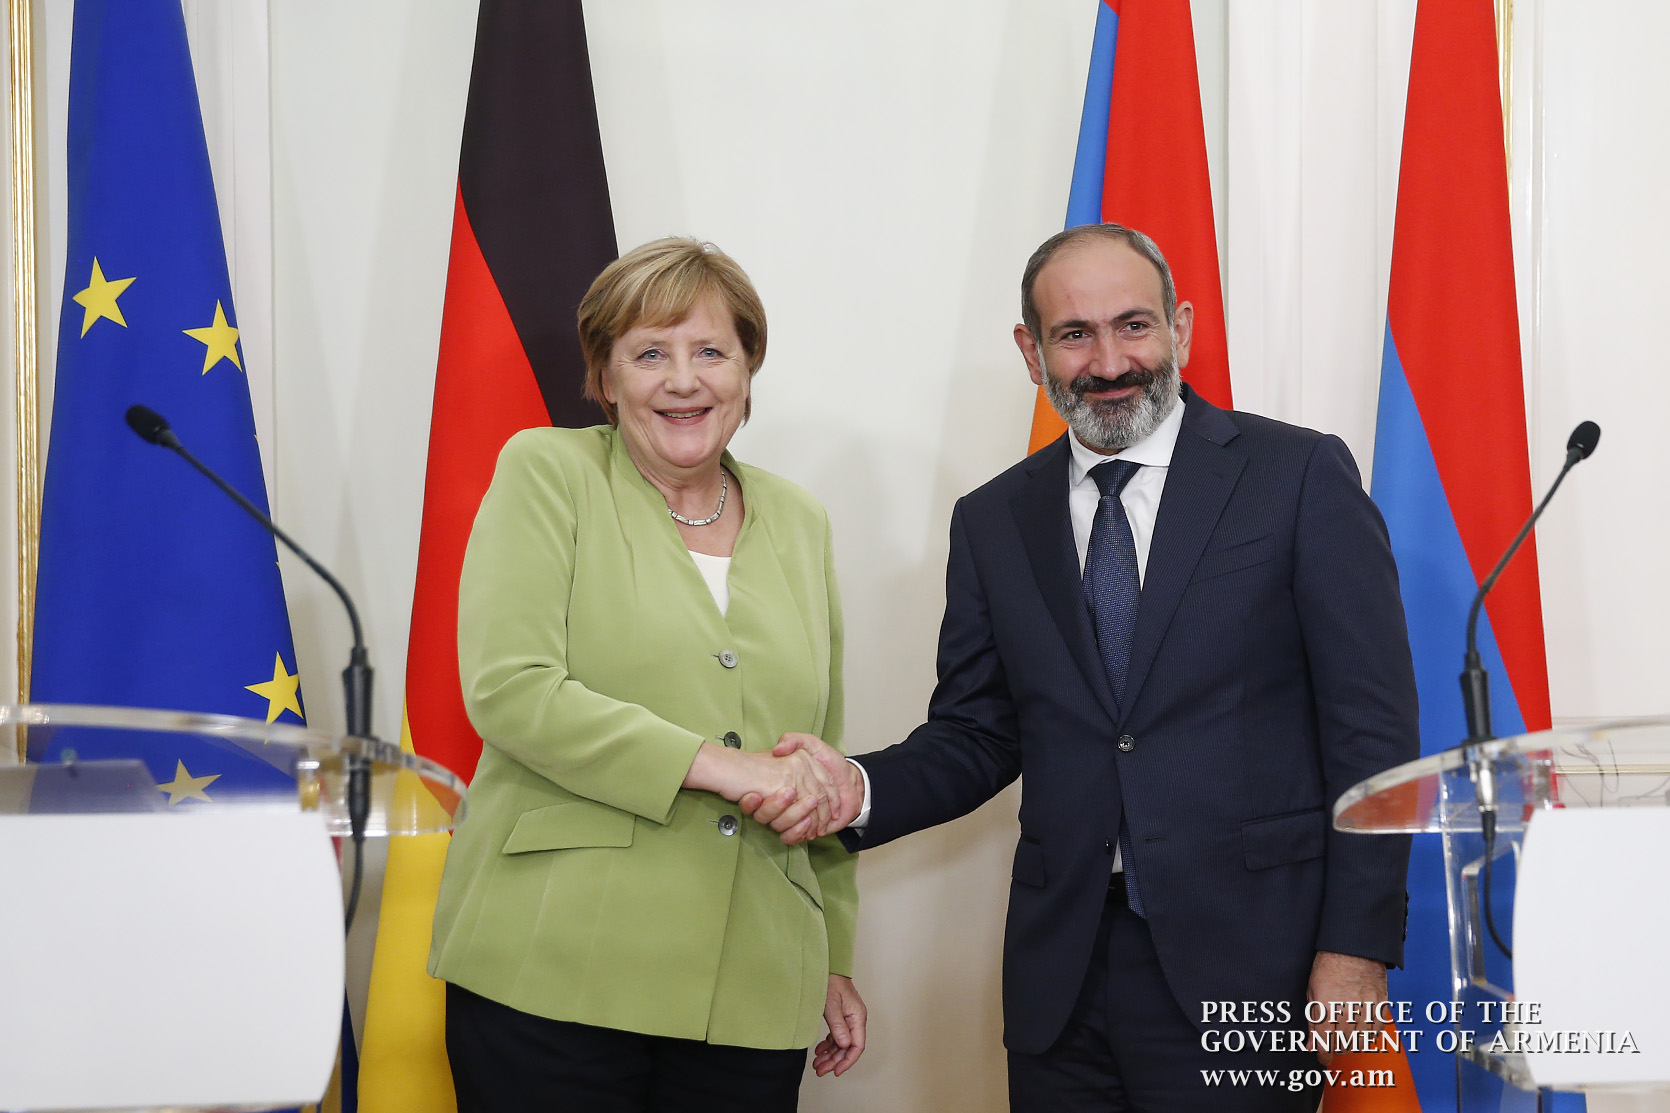 Ангела Меркель поздравила Никола Пашиняна с победой на выборах